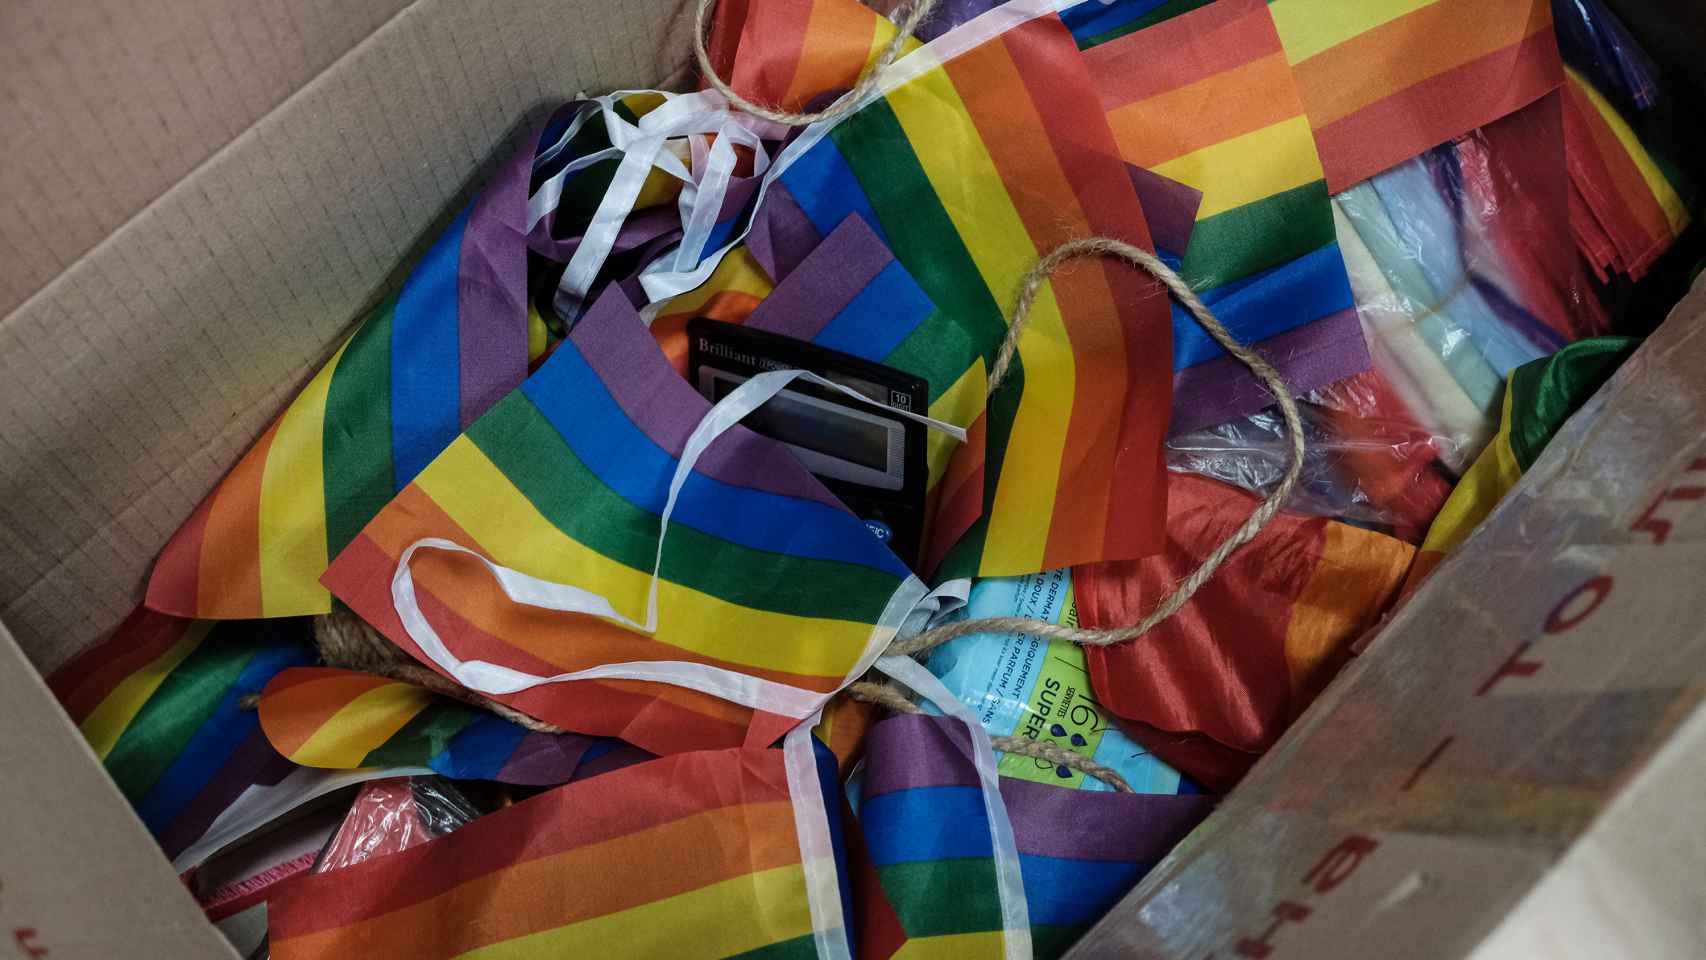 Banderas arco iris, mascarillas y otros elementos que la ONG Sphere utilizó durante la marcha simbólica que organizaron el año pasado